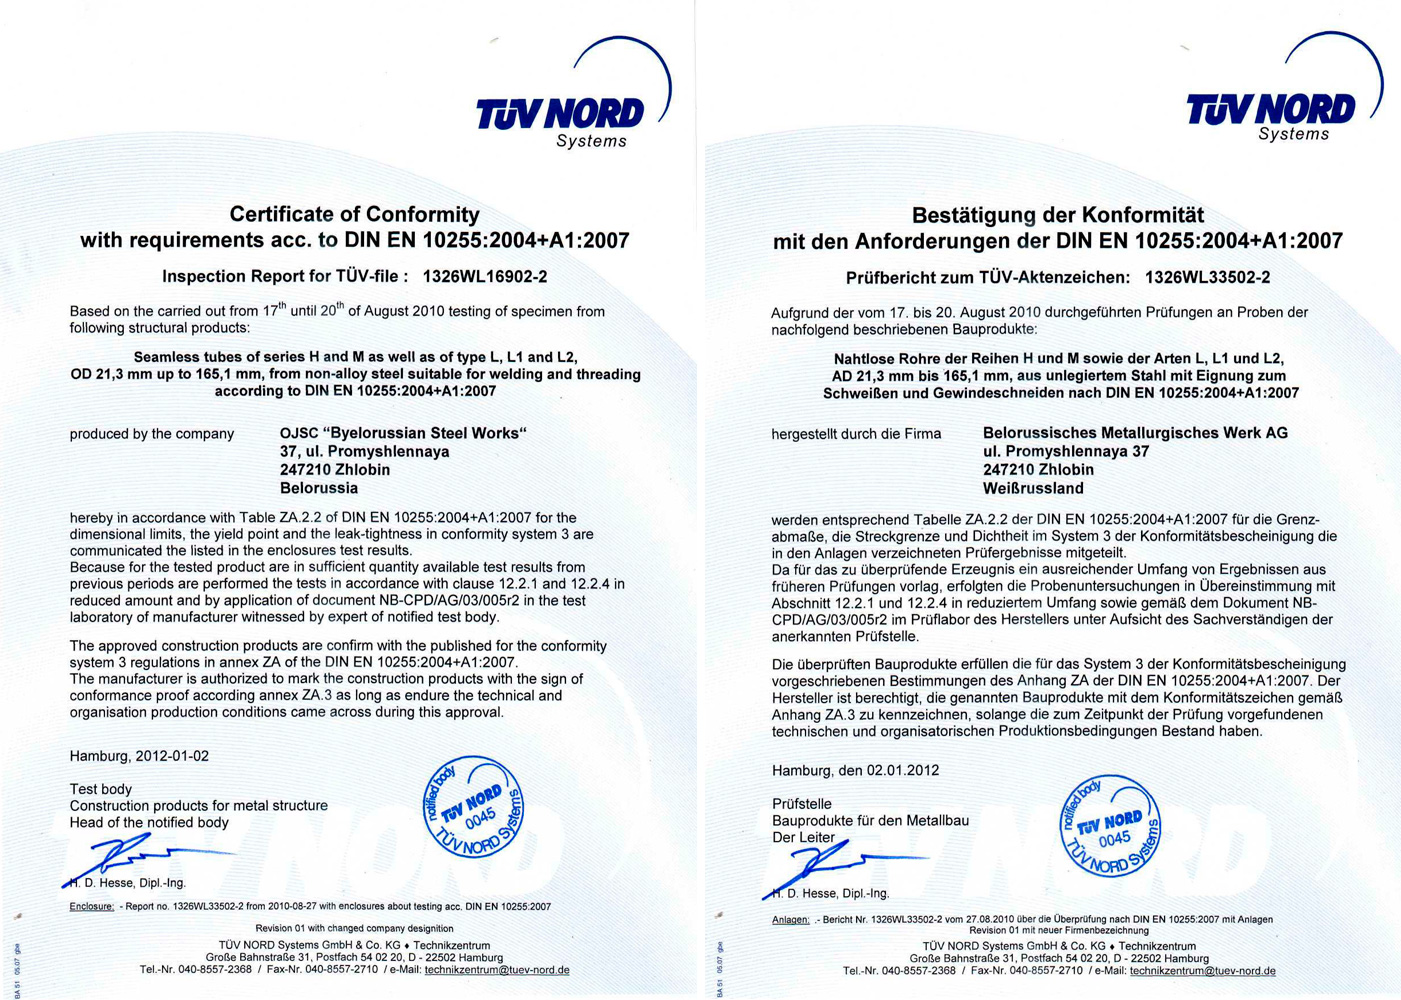 Письмо-разрешение фирмы TUV NORD (Германия) от 02.01.2012 на производство бесшовных труб ряда Н и М, а также типов L, L1 и L2 ø 21,3-165,1 мм из нелегированной стали для сварки и нарезки резьбы в соответствии с DIN EN 10255:2004+А1:2007 и Директивой 89/106/EC (с правом нанесения СЕ маркировки)